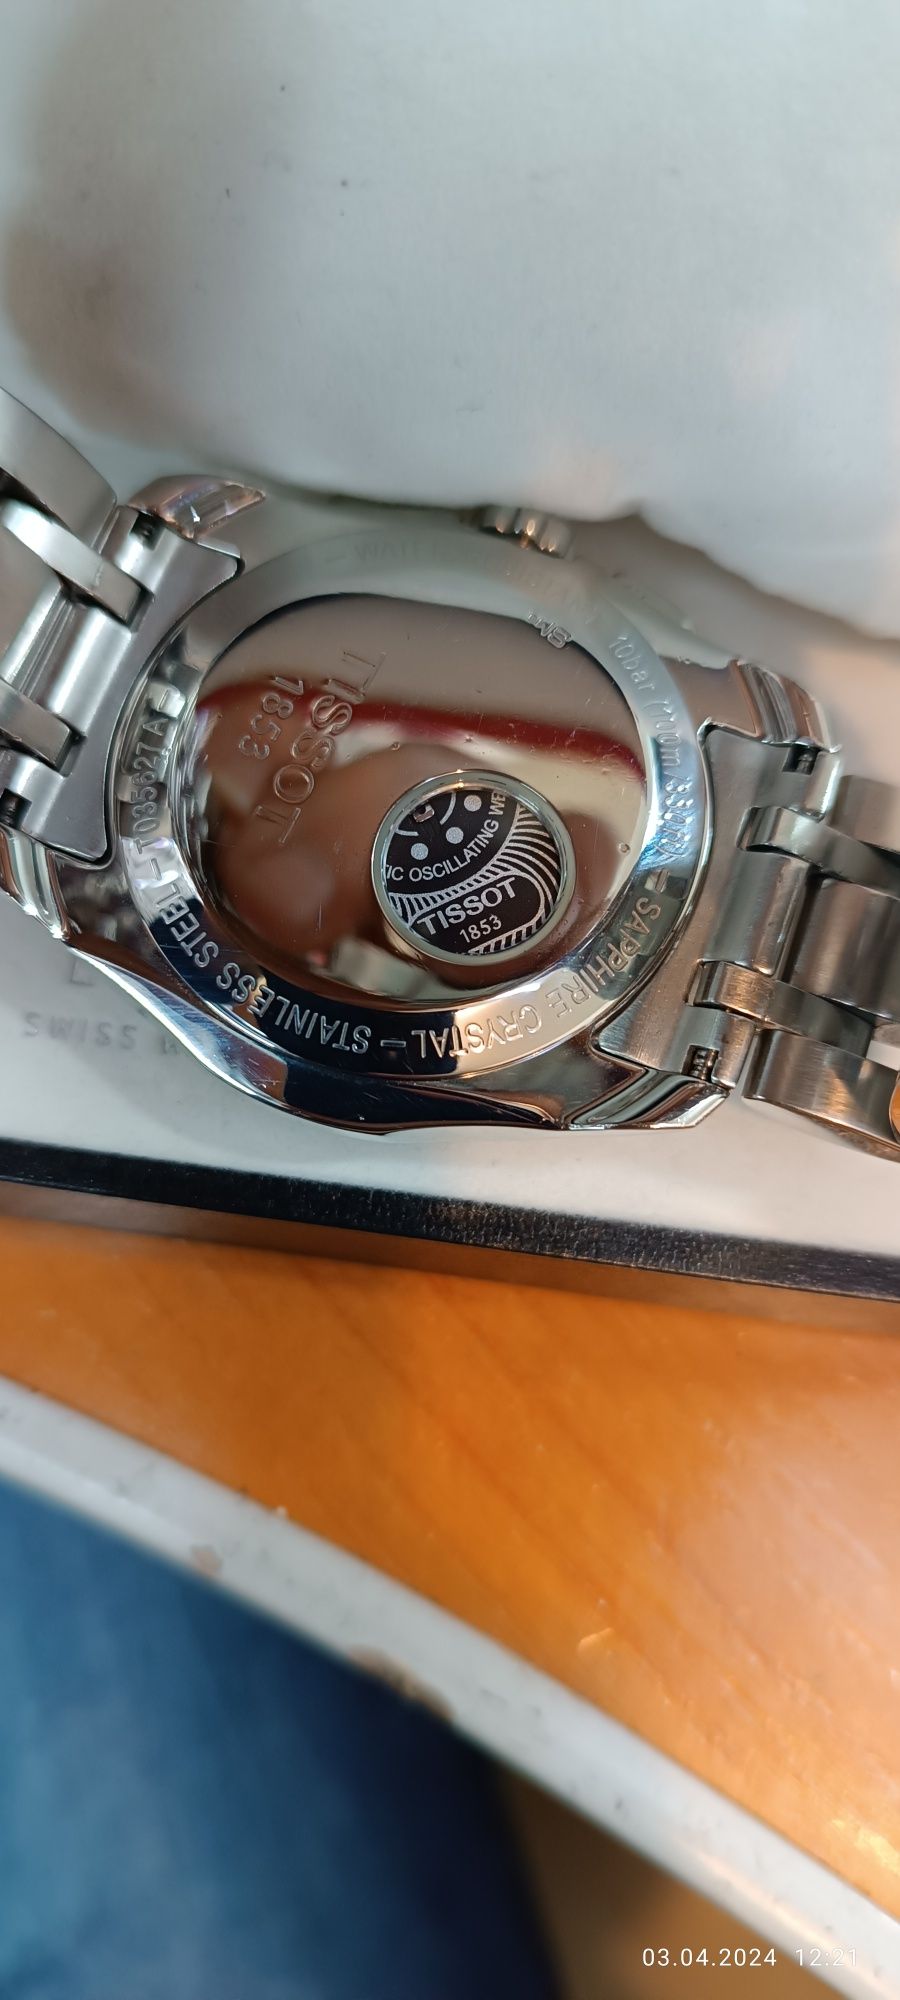 Швейцарские часы Tissot Automatic хронограф, оригинал любые проверки.